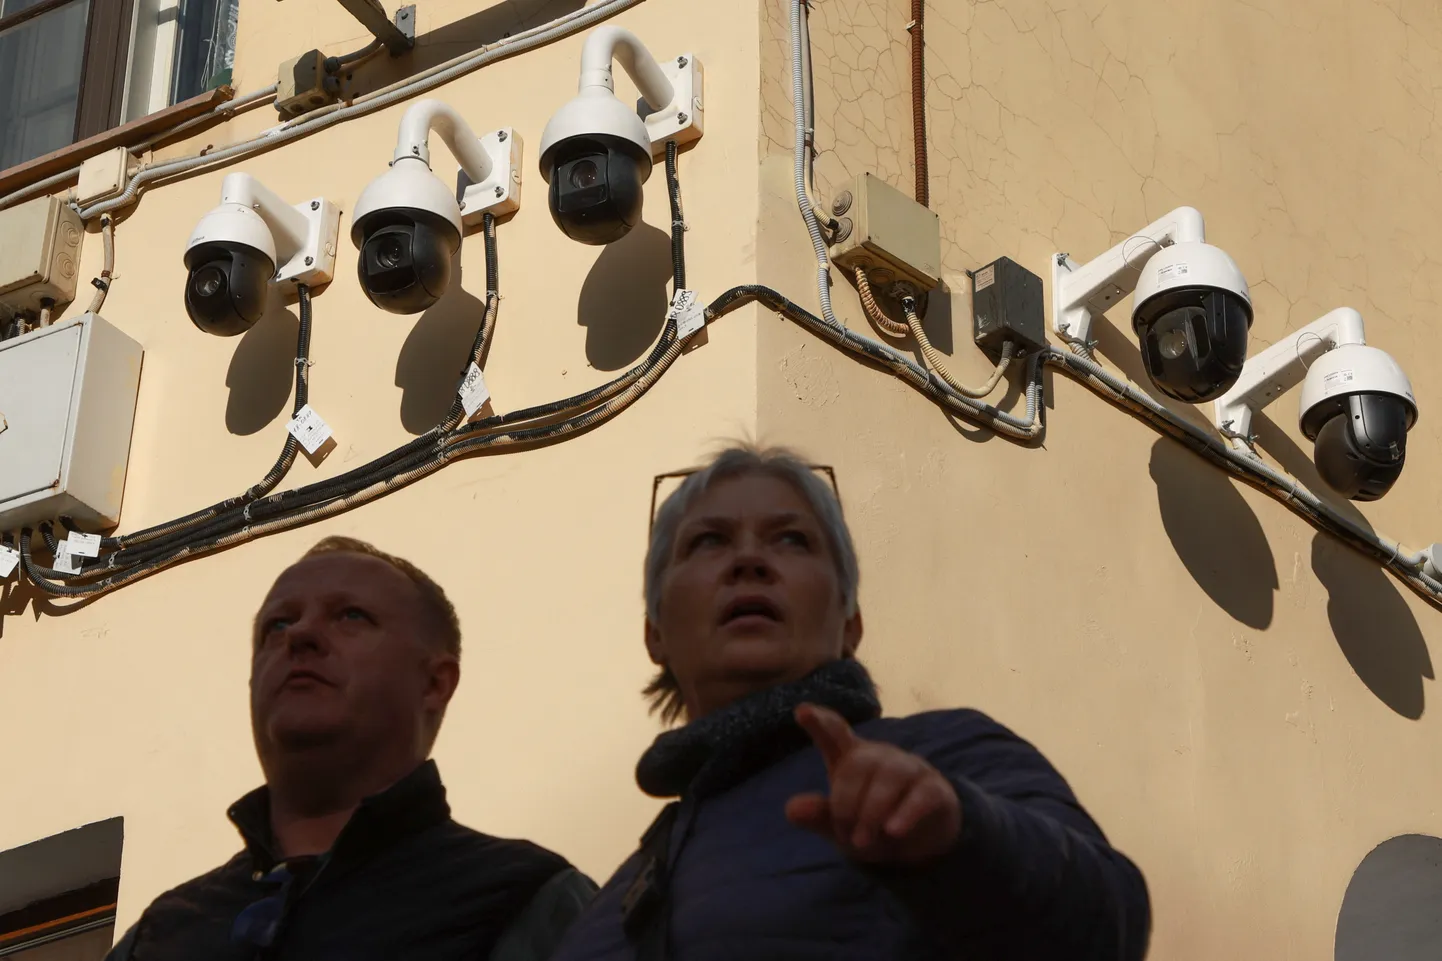 Venemaa elanikke jälgivad turvakaamerad. Foto on illustratiivne.